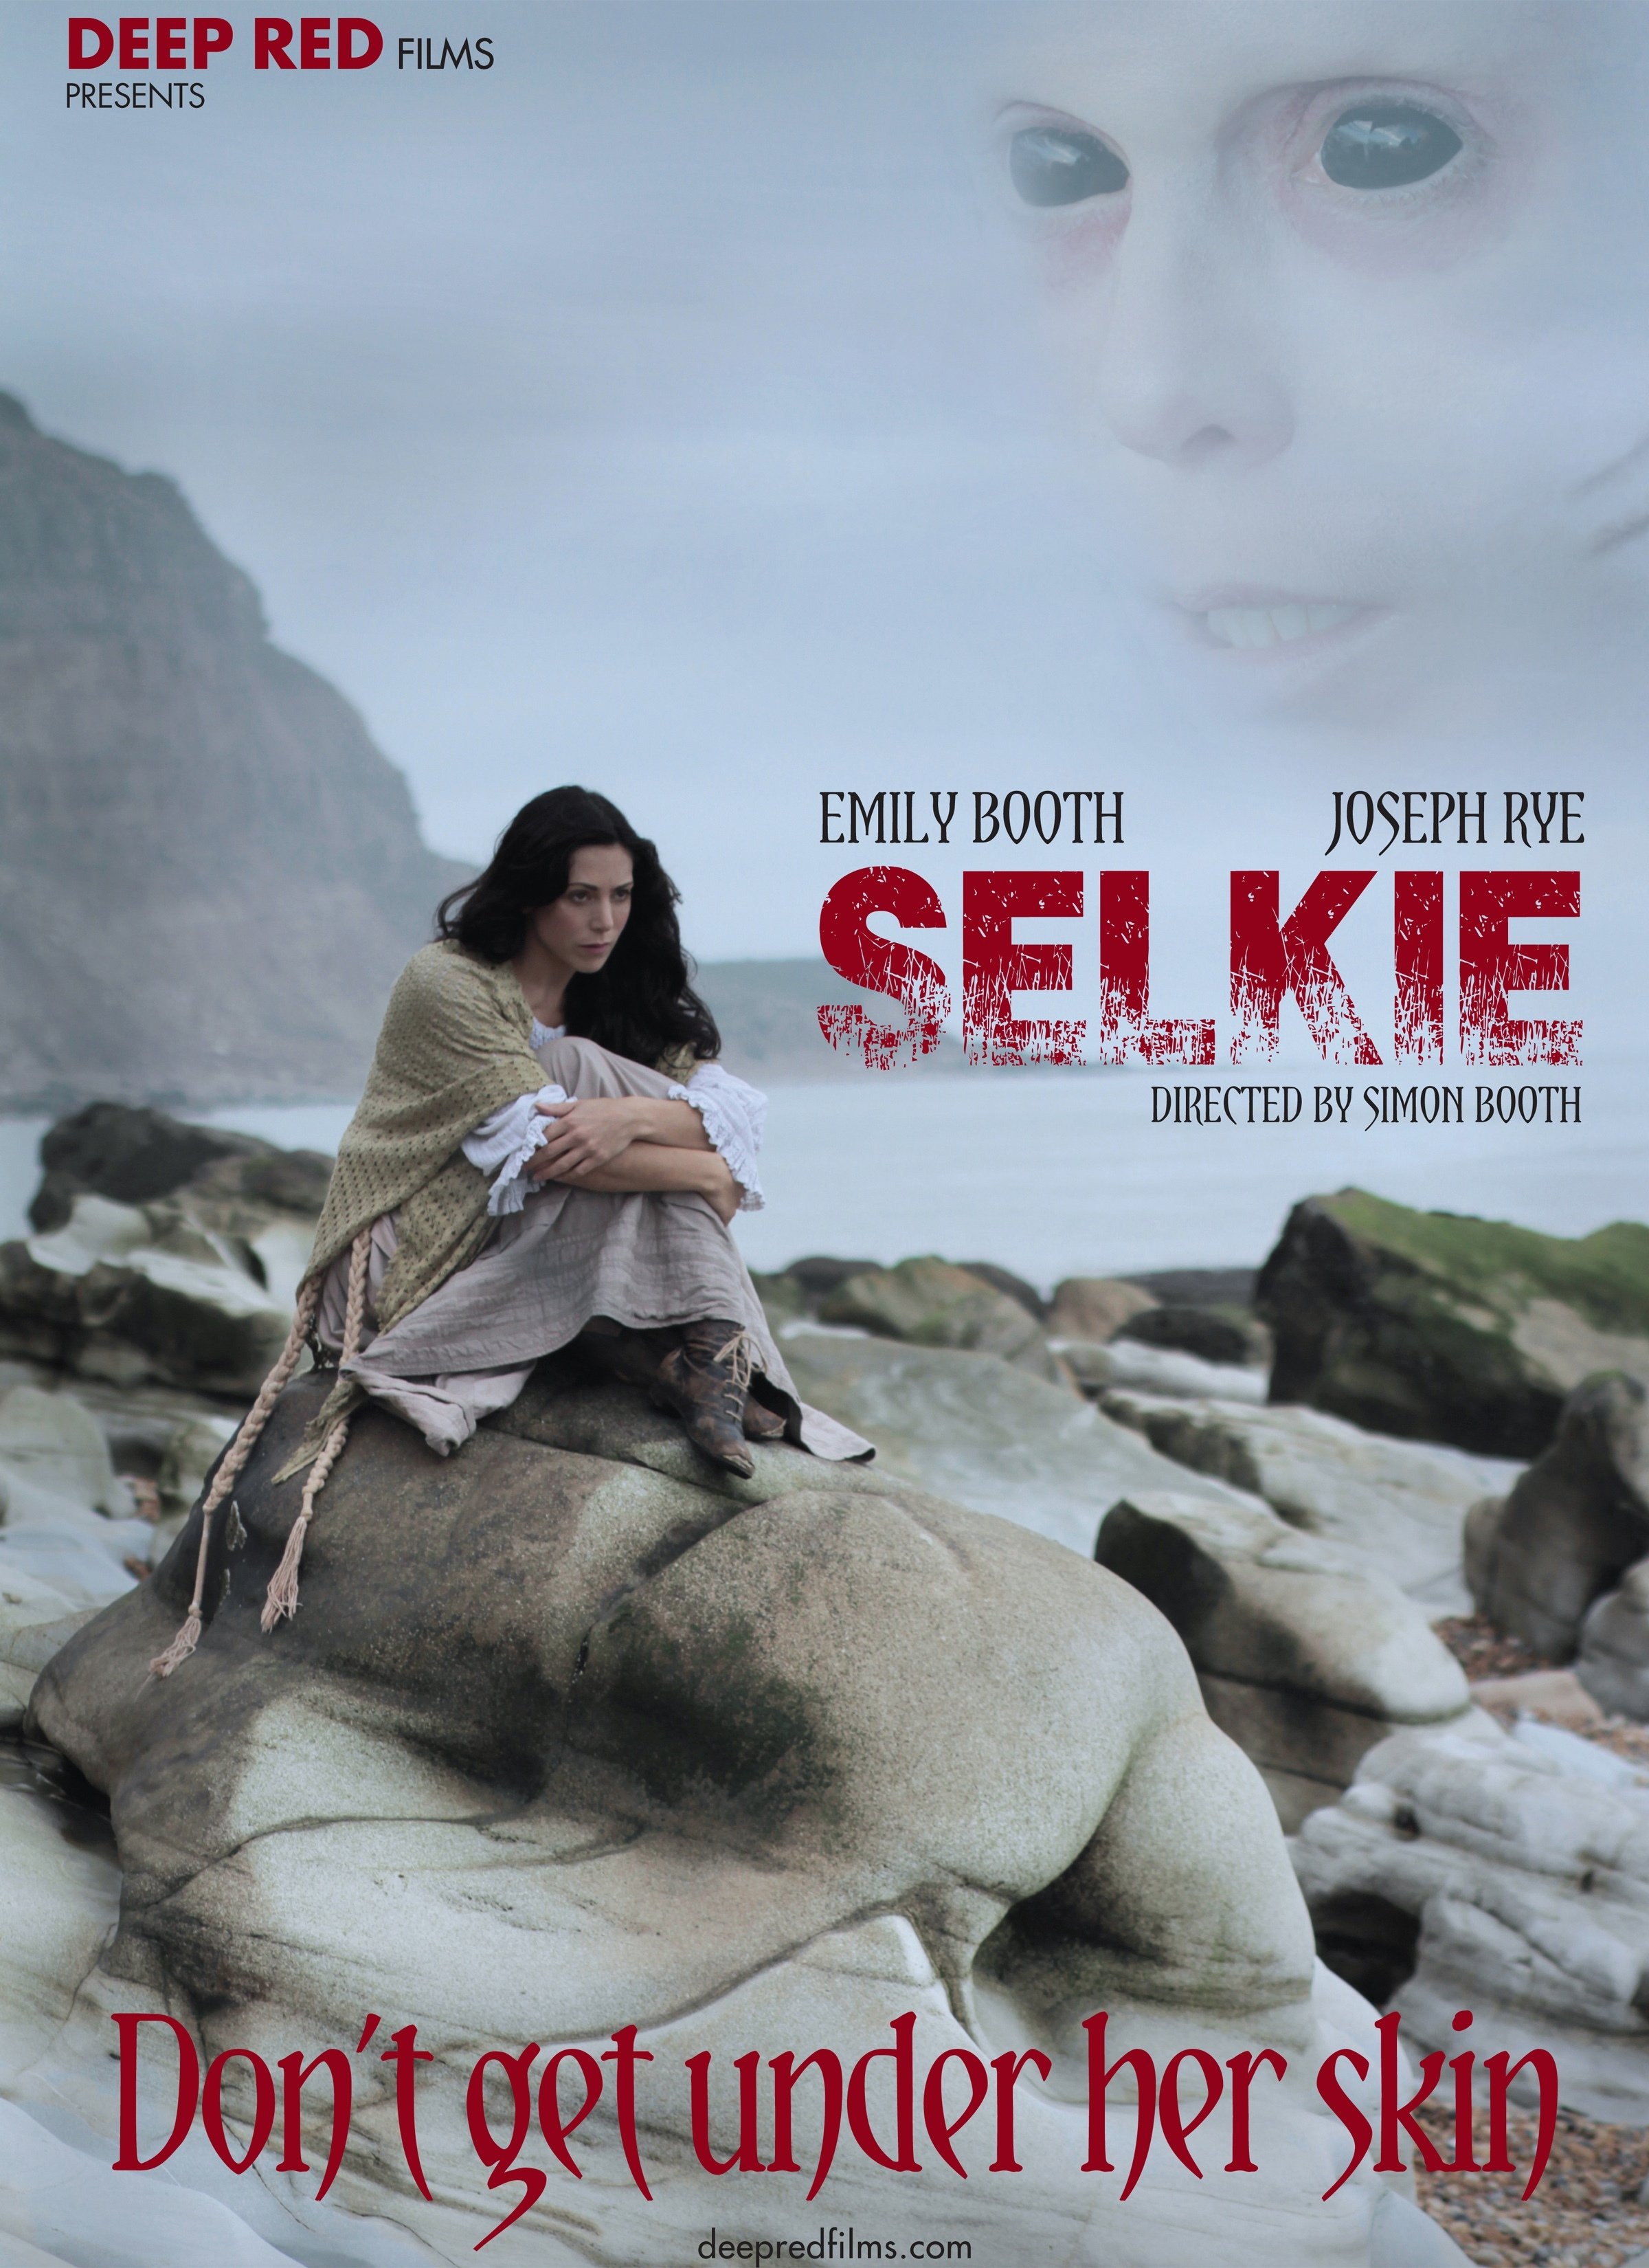 Selkie (2014) Screenshot 1 